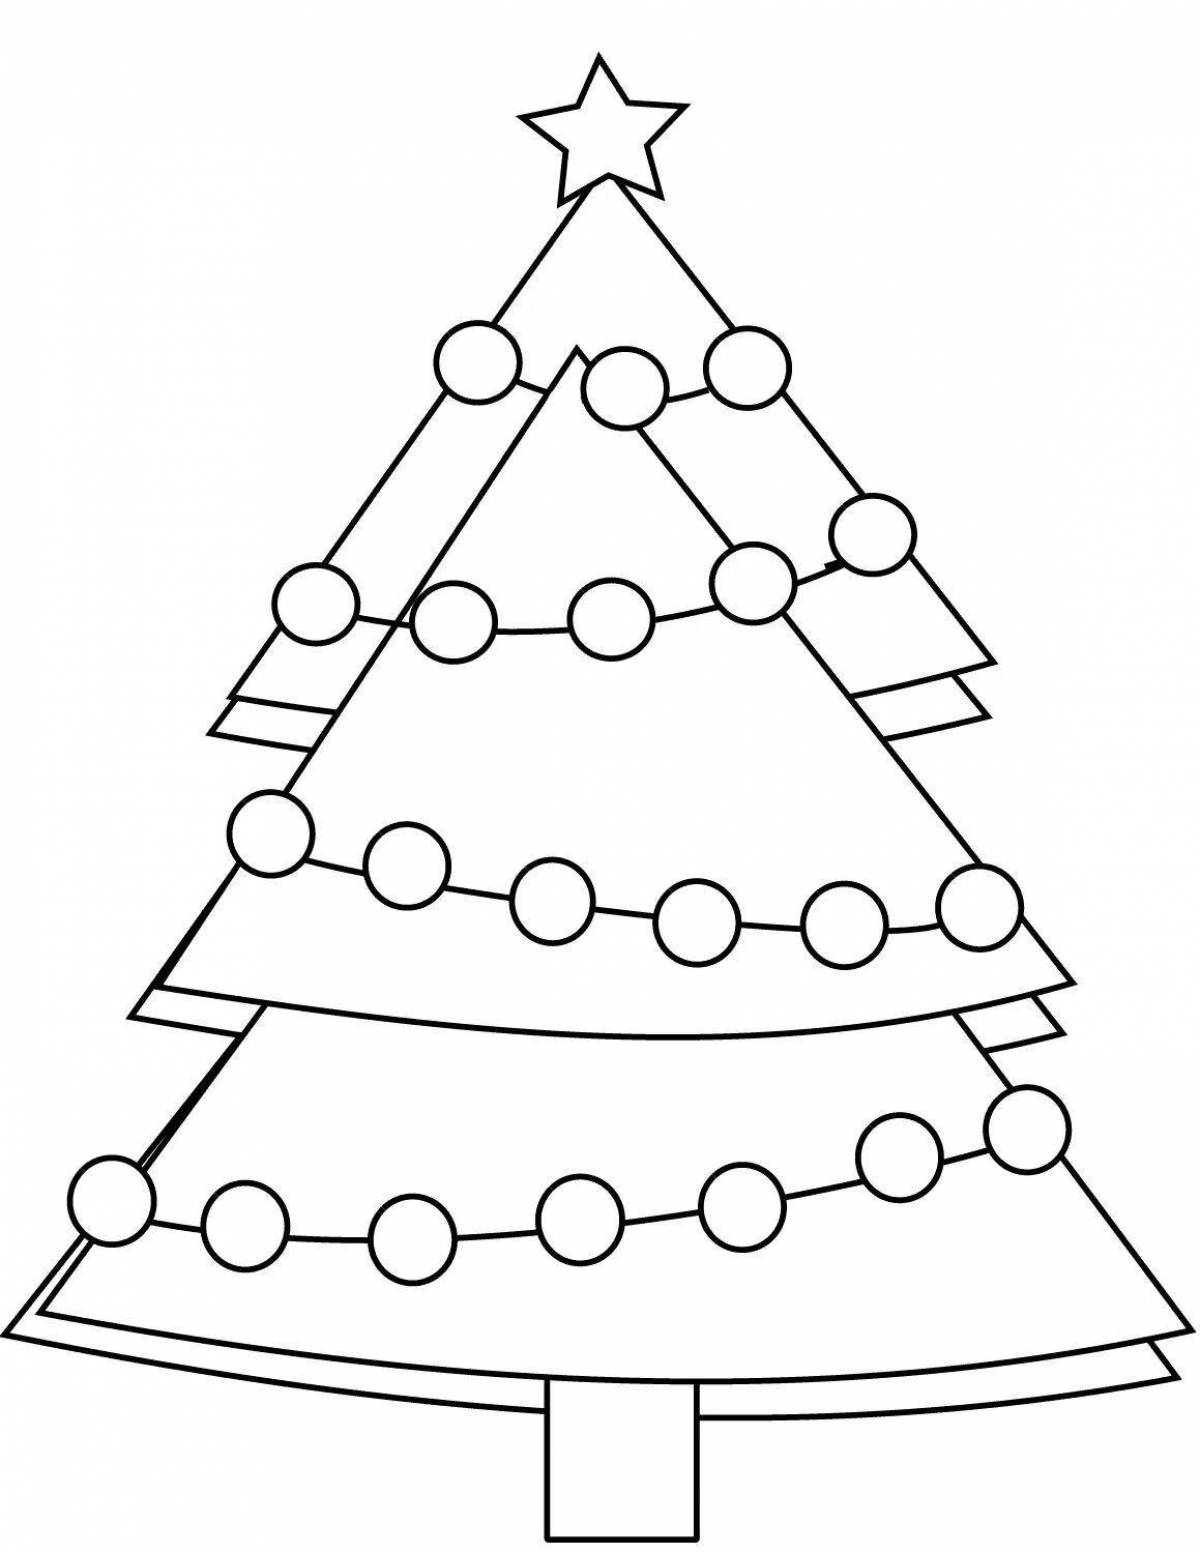 Adorable Christmas tree drawing for kids